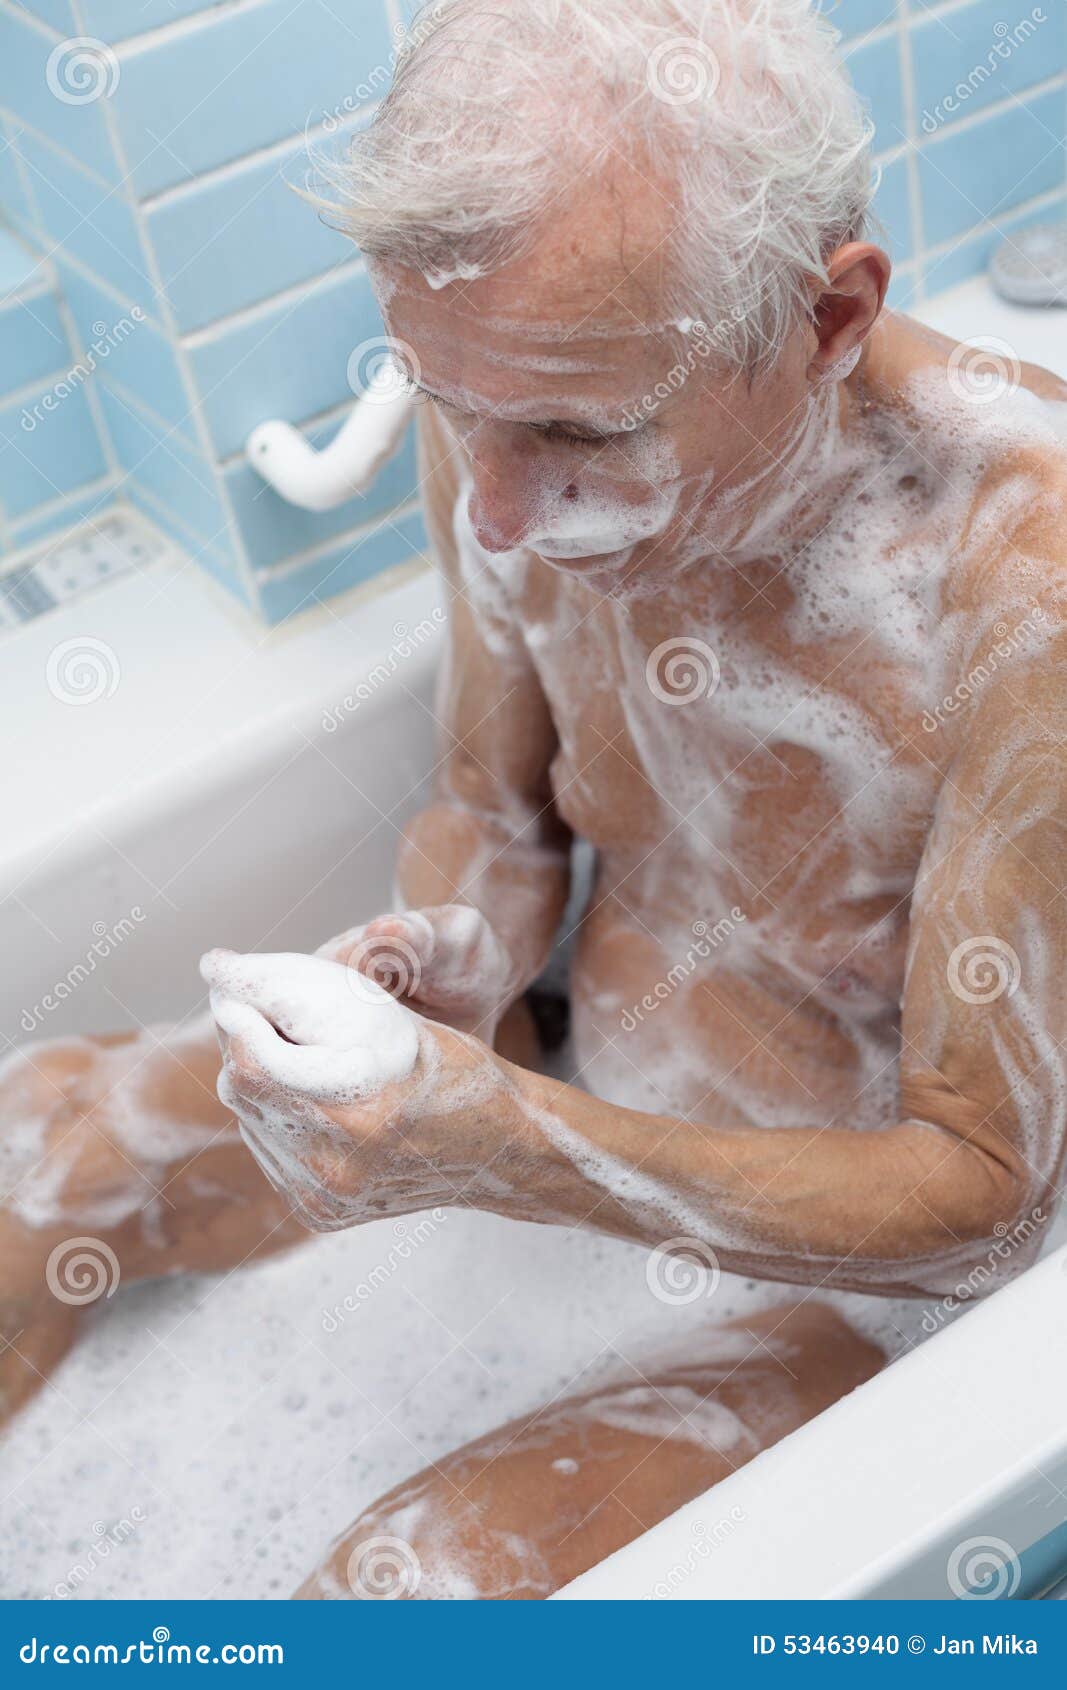 Дед купается. Дед в ванной. Пожилой человек в ванной. Человек моется в ванной. Дедушка моется.